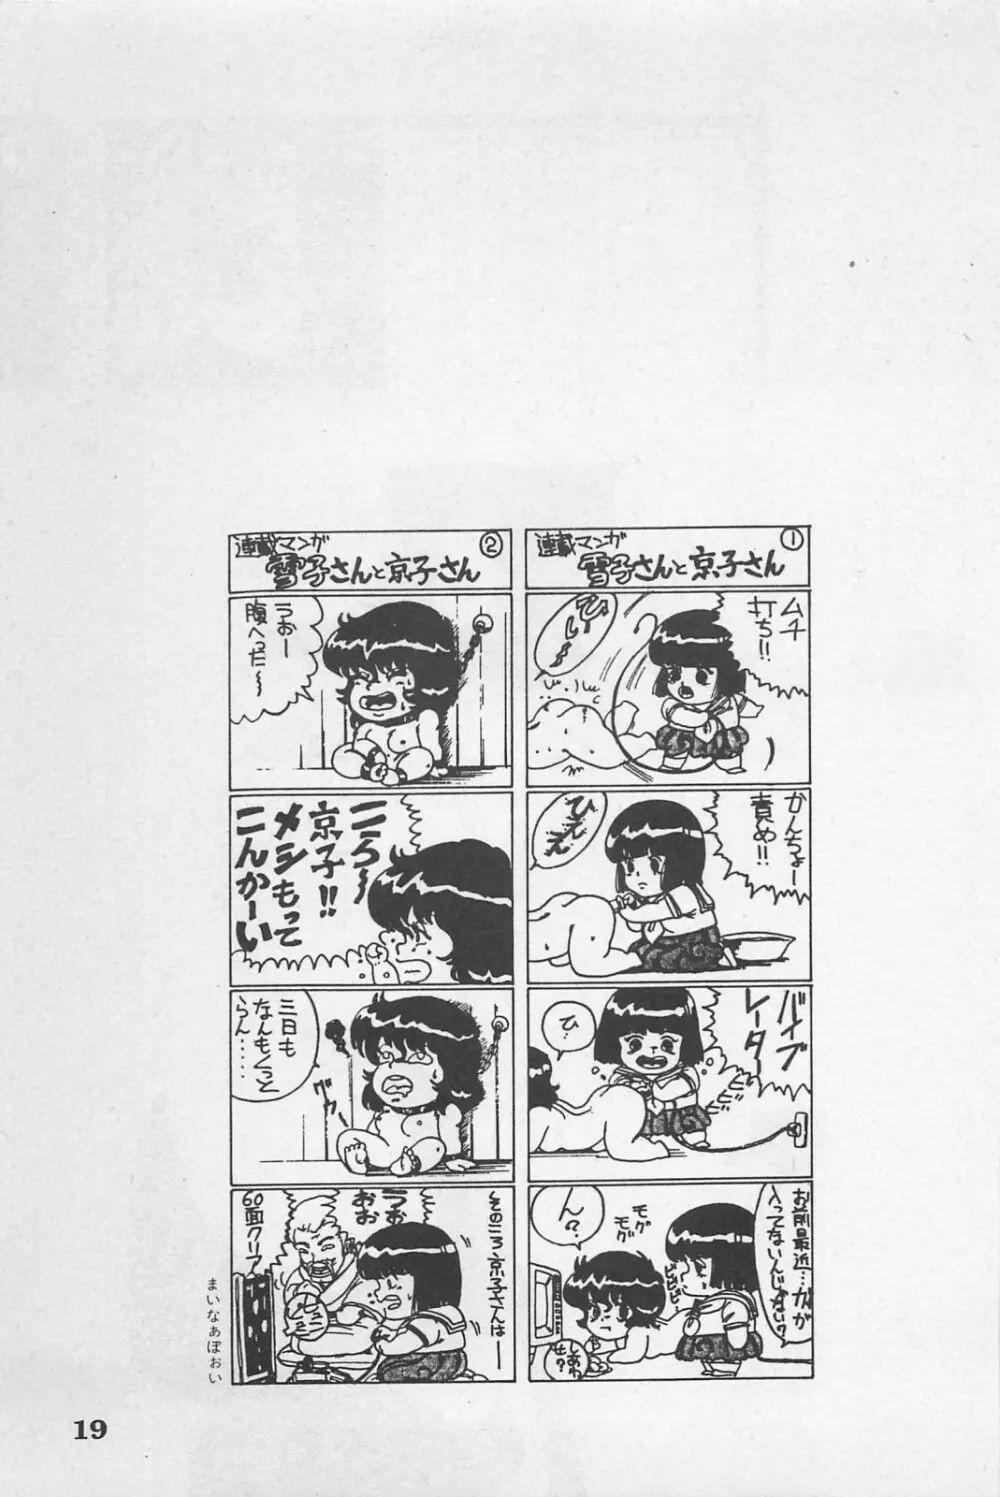 美少女症候群 1985 Page.21